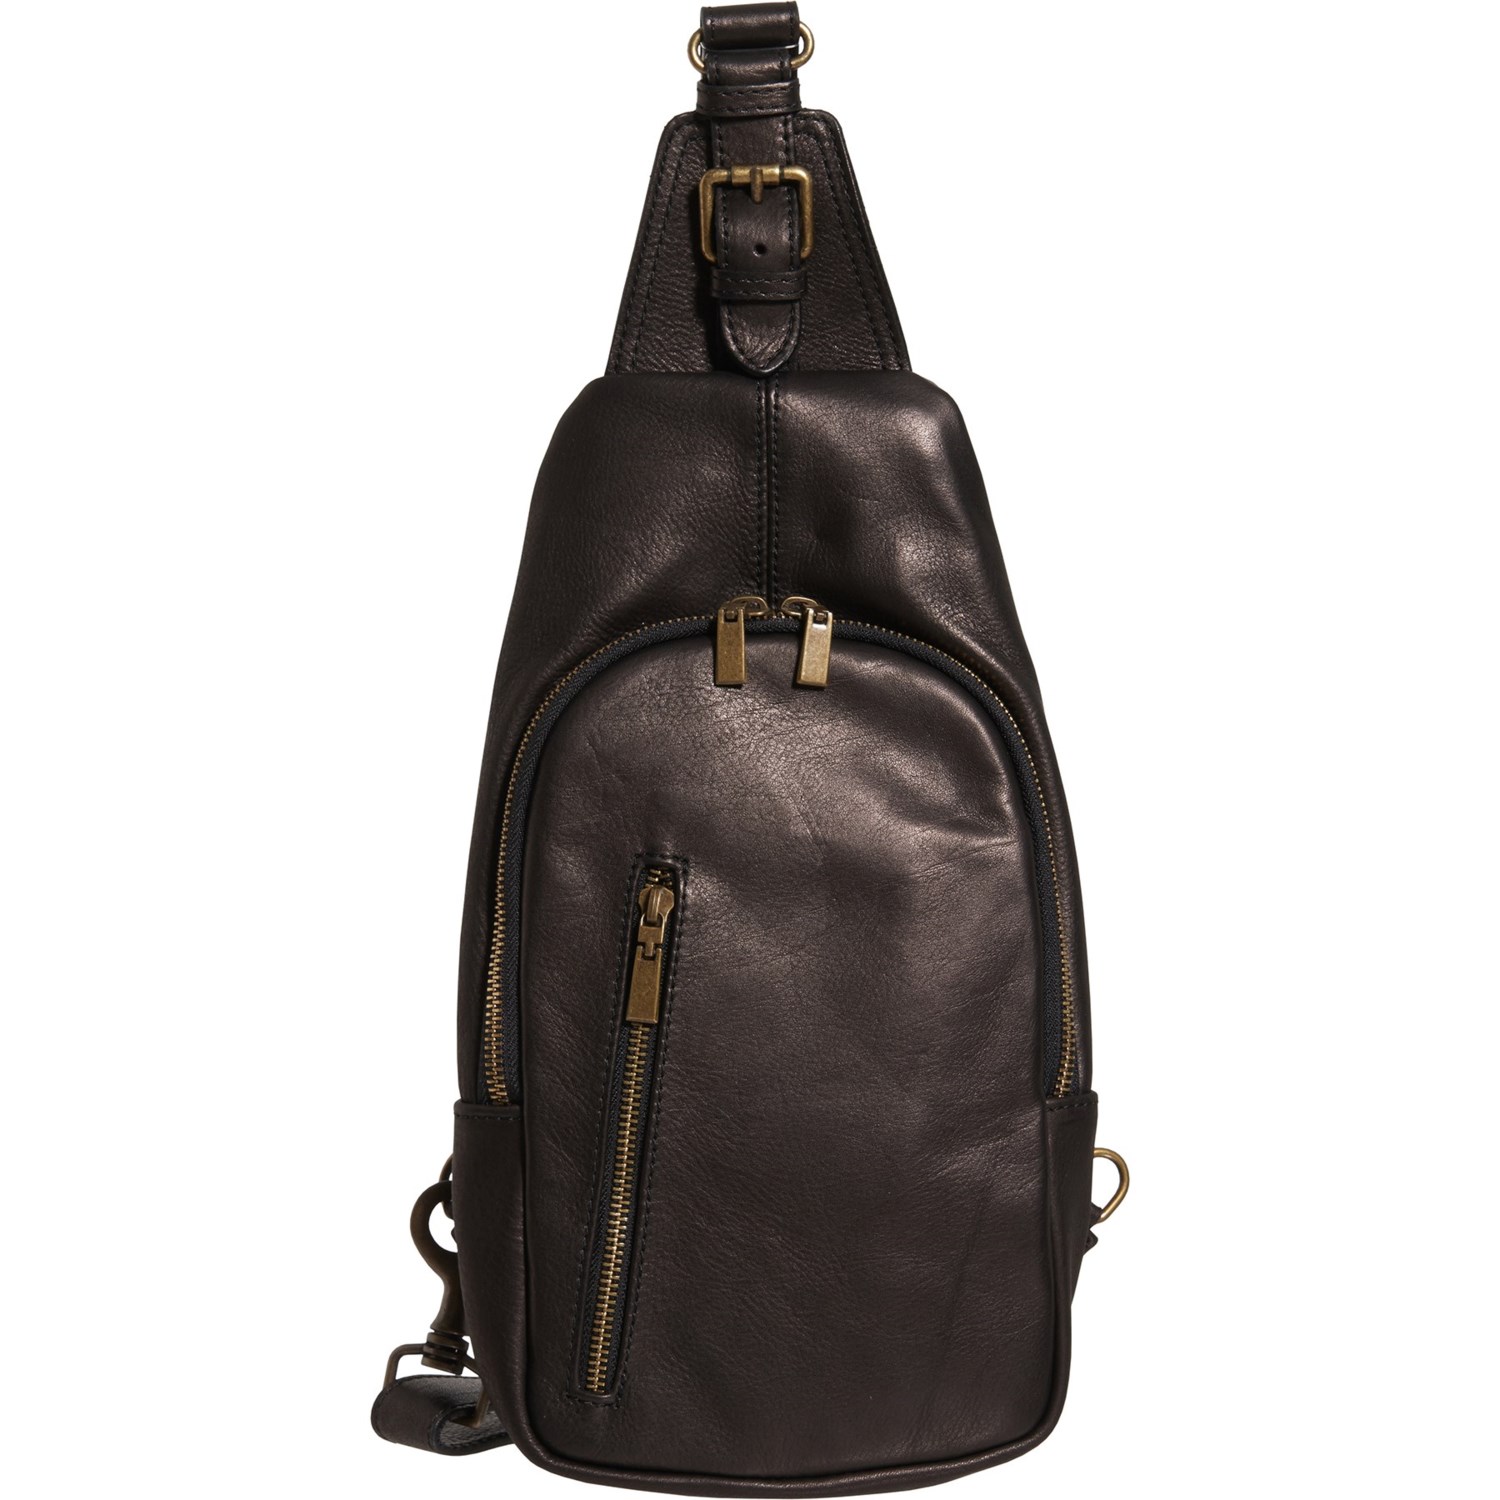 DIVA Sling Crossbody Bag (For Women) - Save 45%